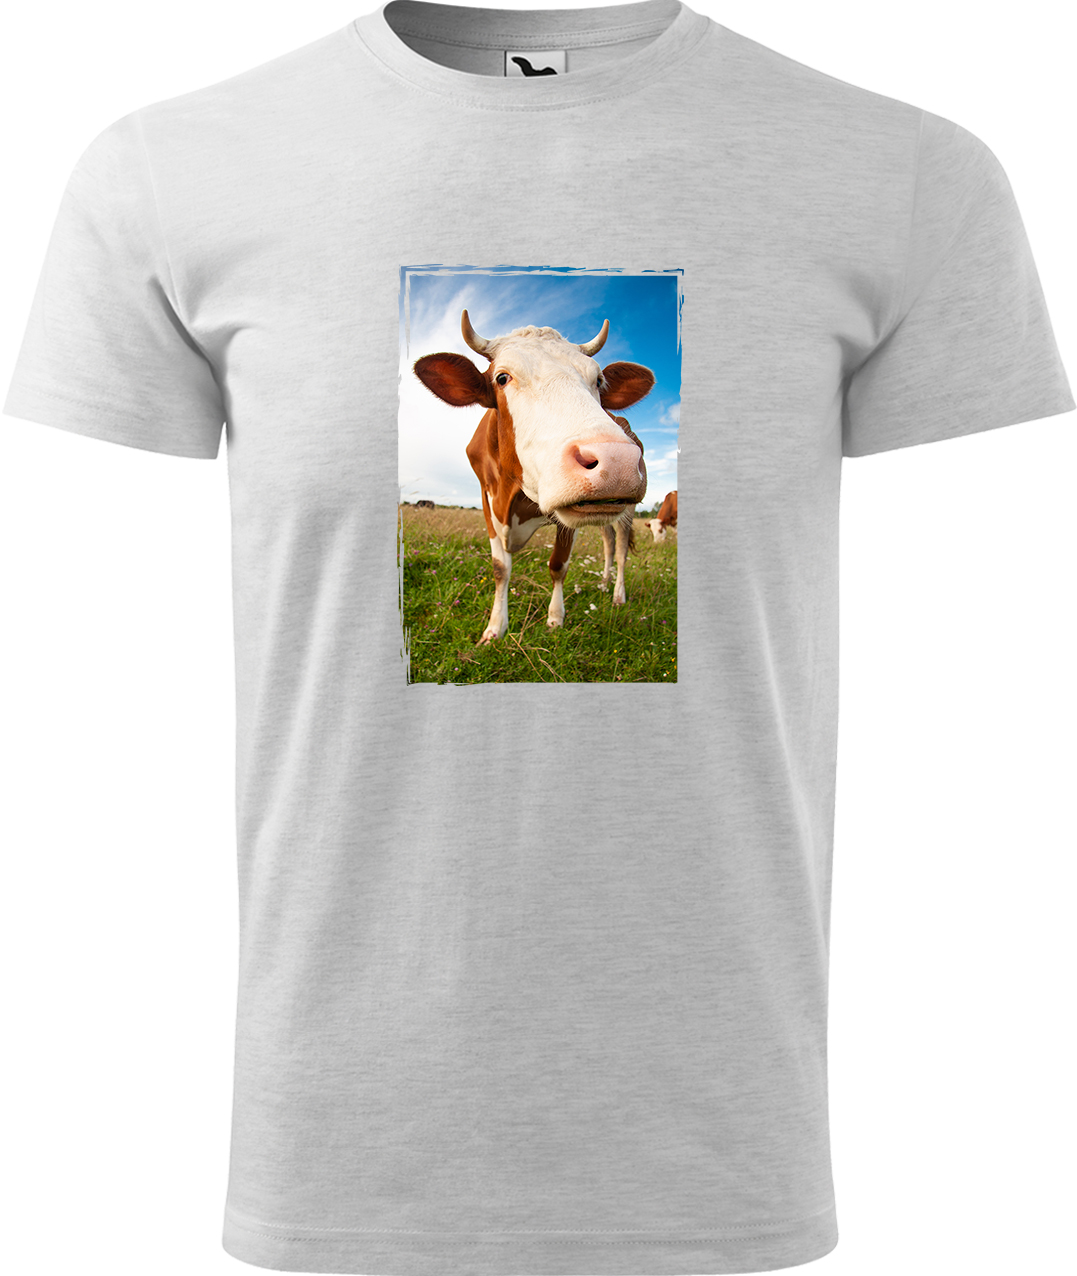 Pánské tričko s krávou - Na pastvě Velikost: M, Barva: Světle šedý melír (03), Střih: pánský